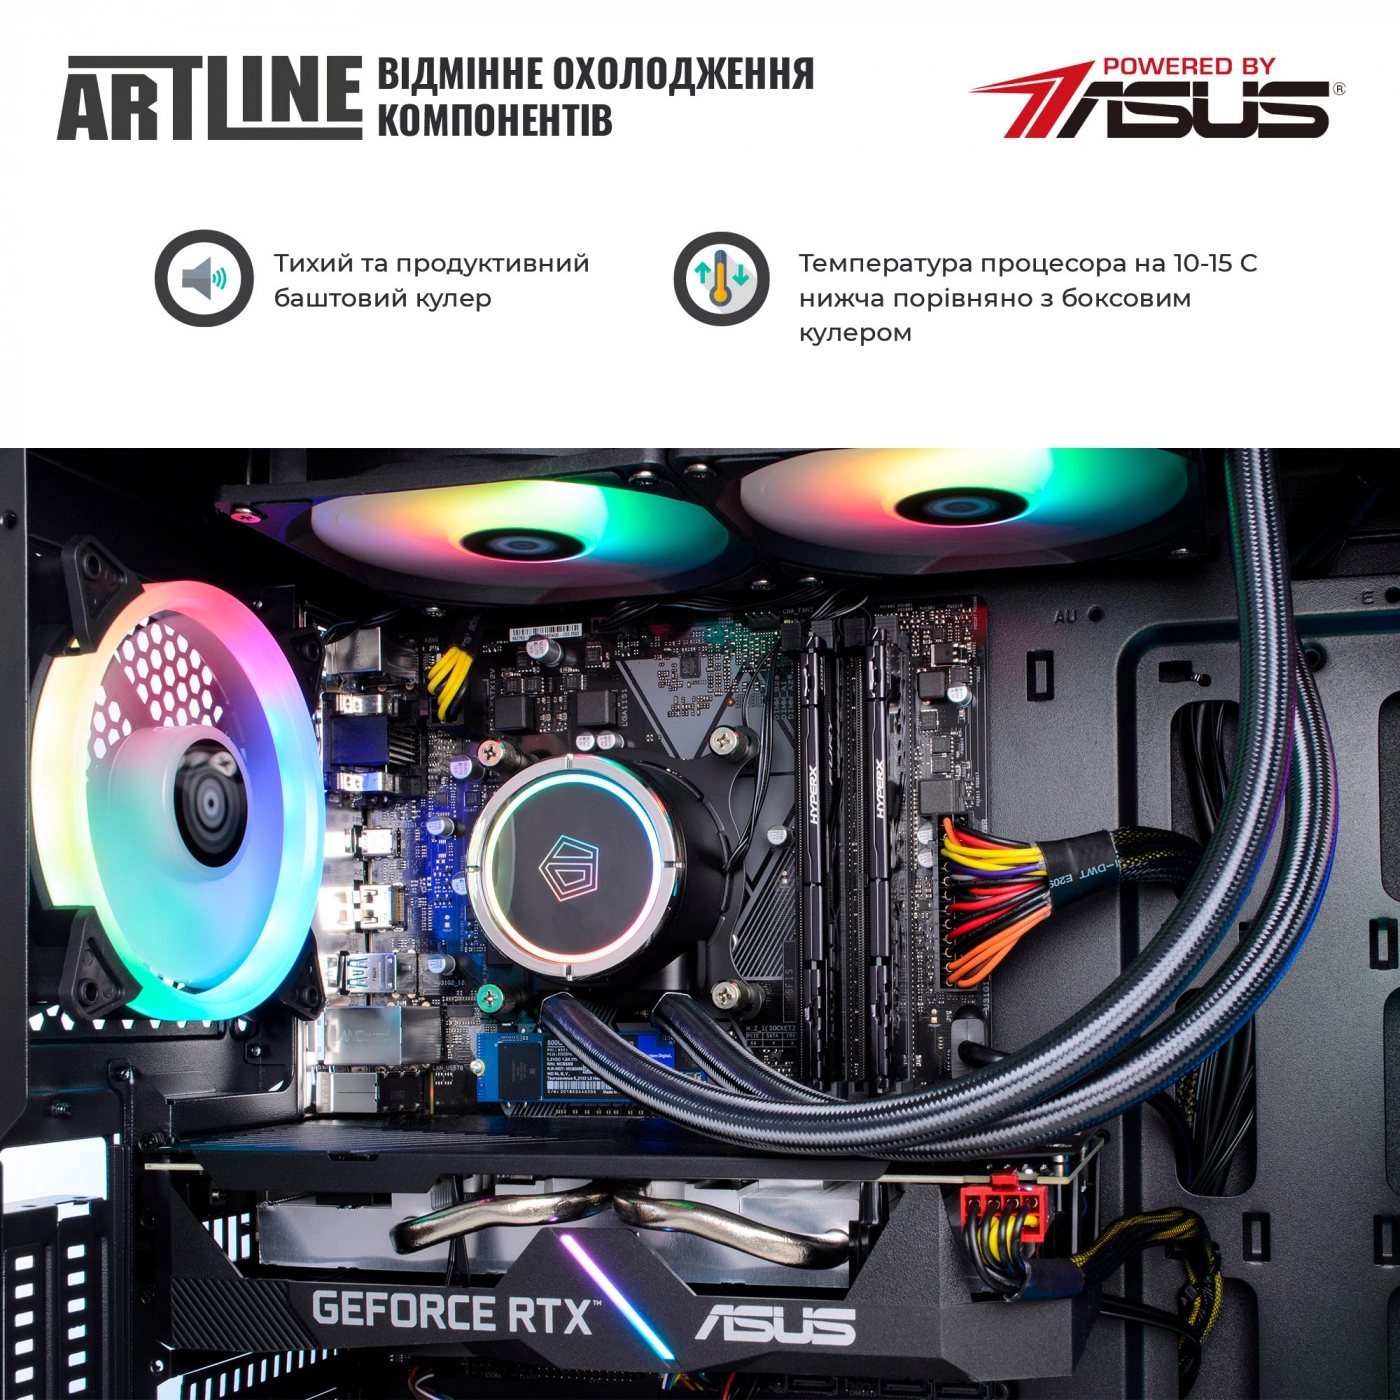 Купить Компьютер ARTLINE Gaming X77v48 - фото 5